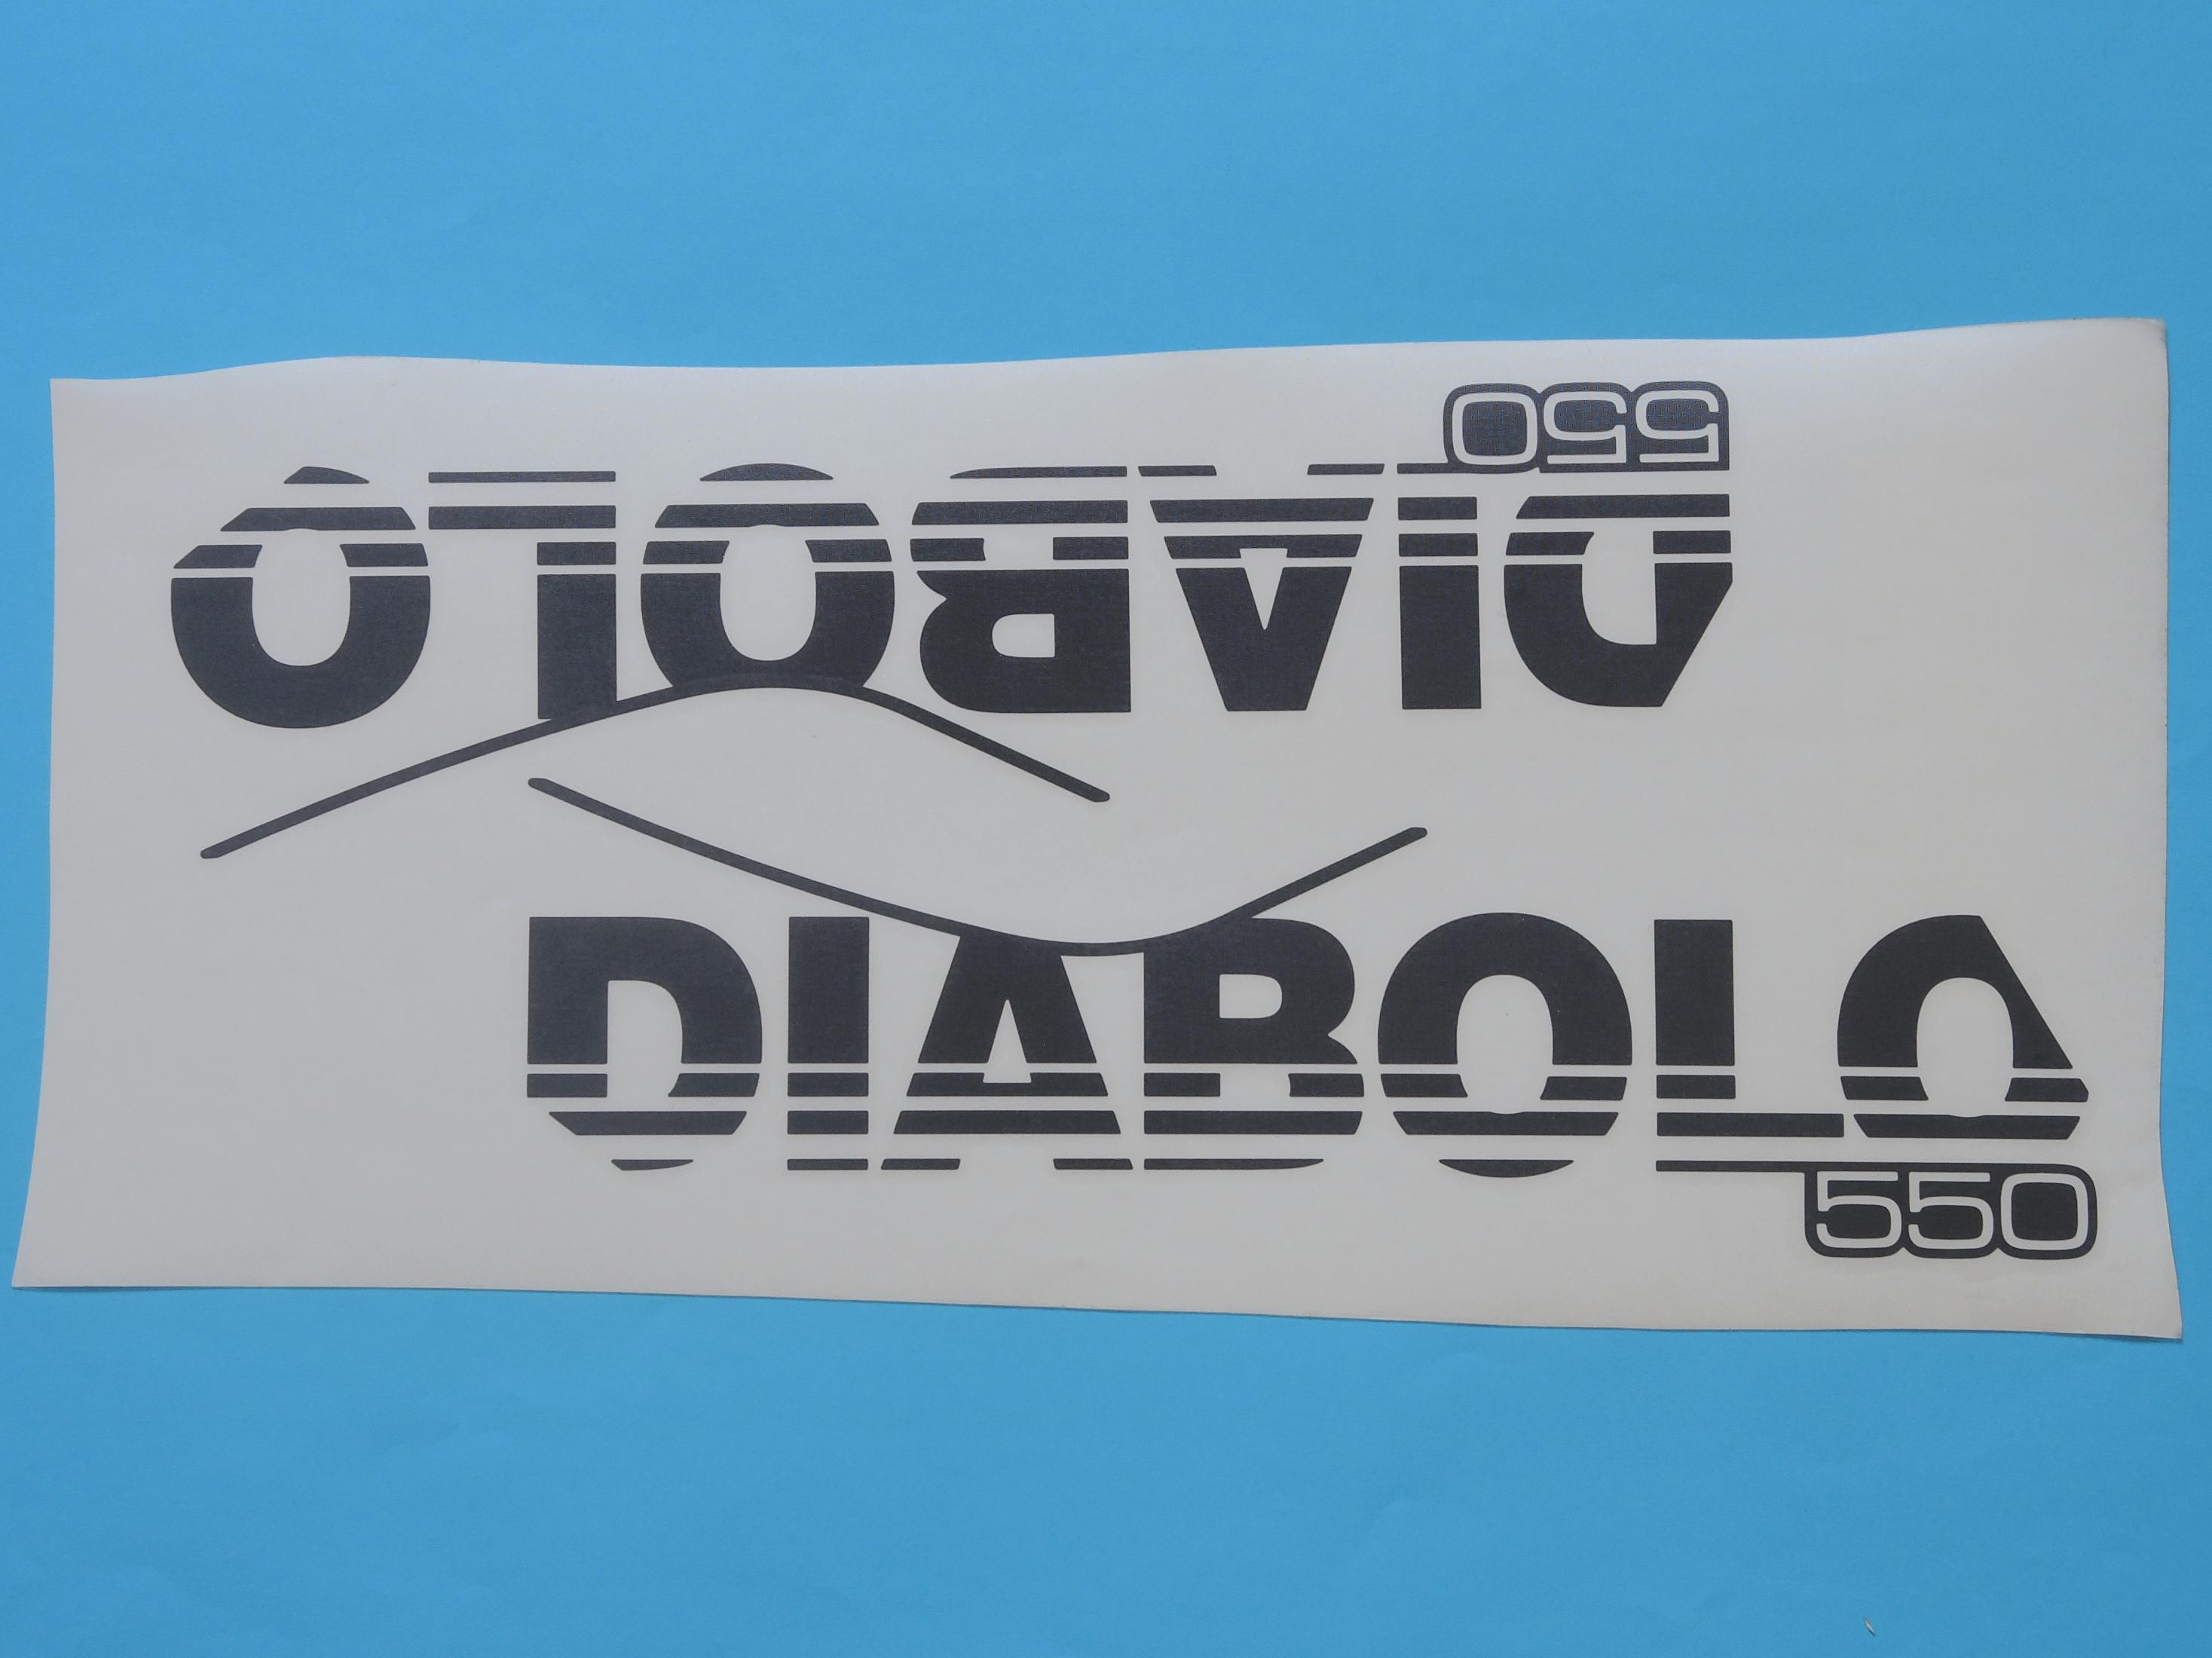 Schriftzug "Diabolo 550"